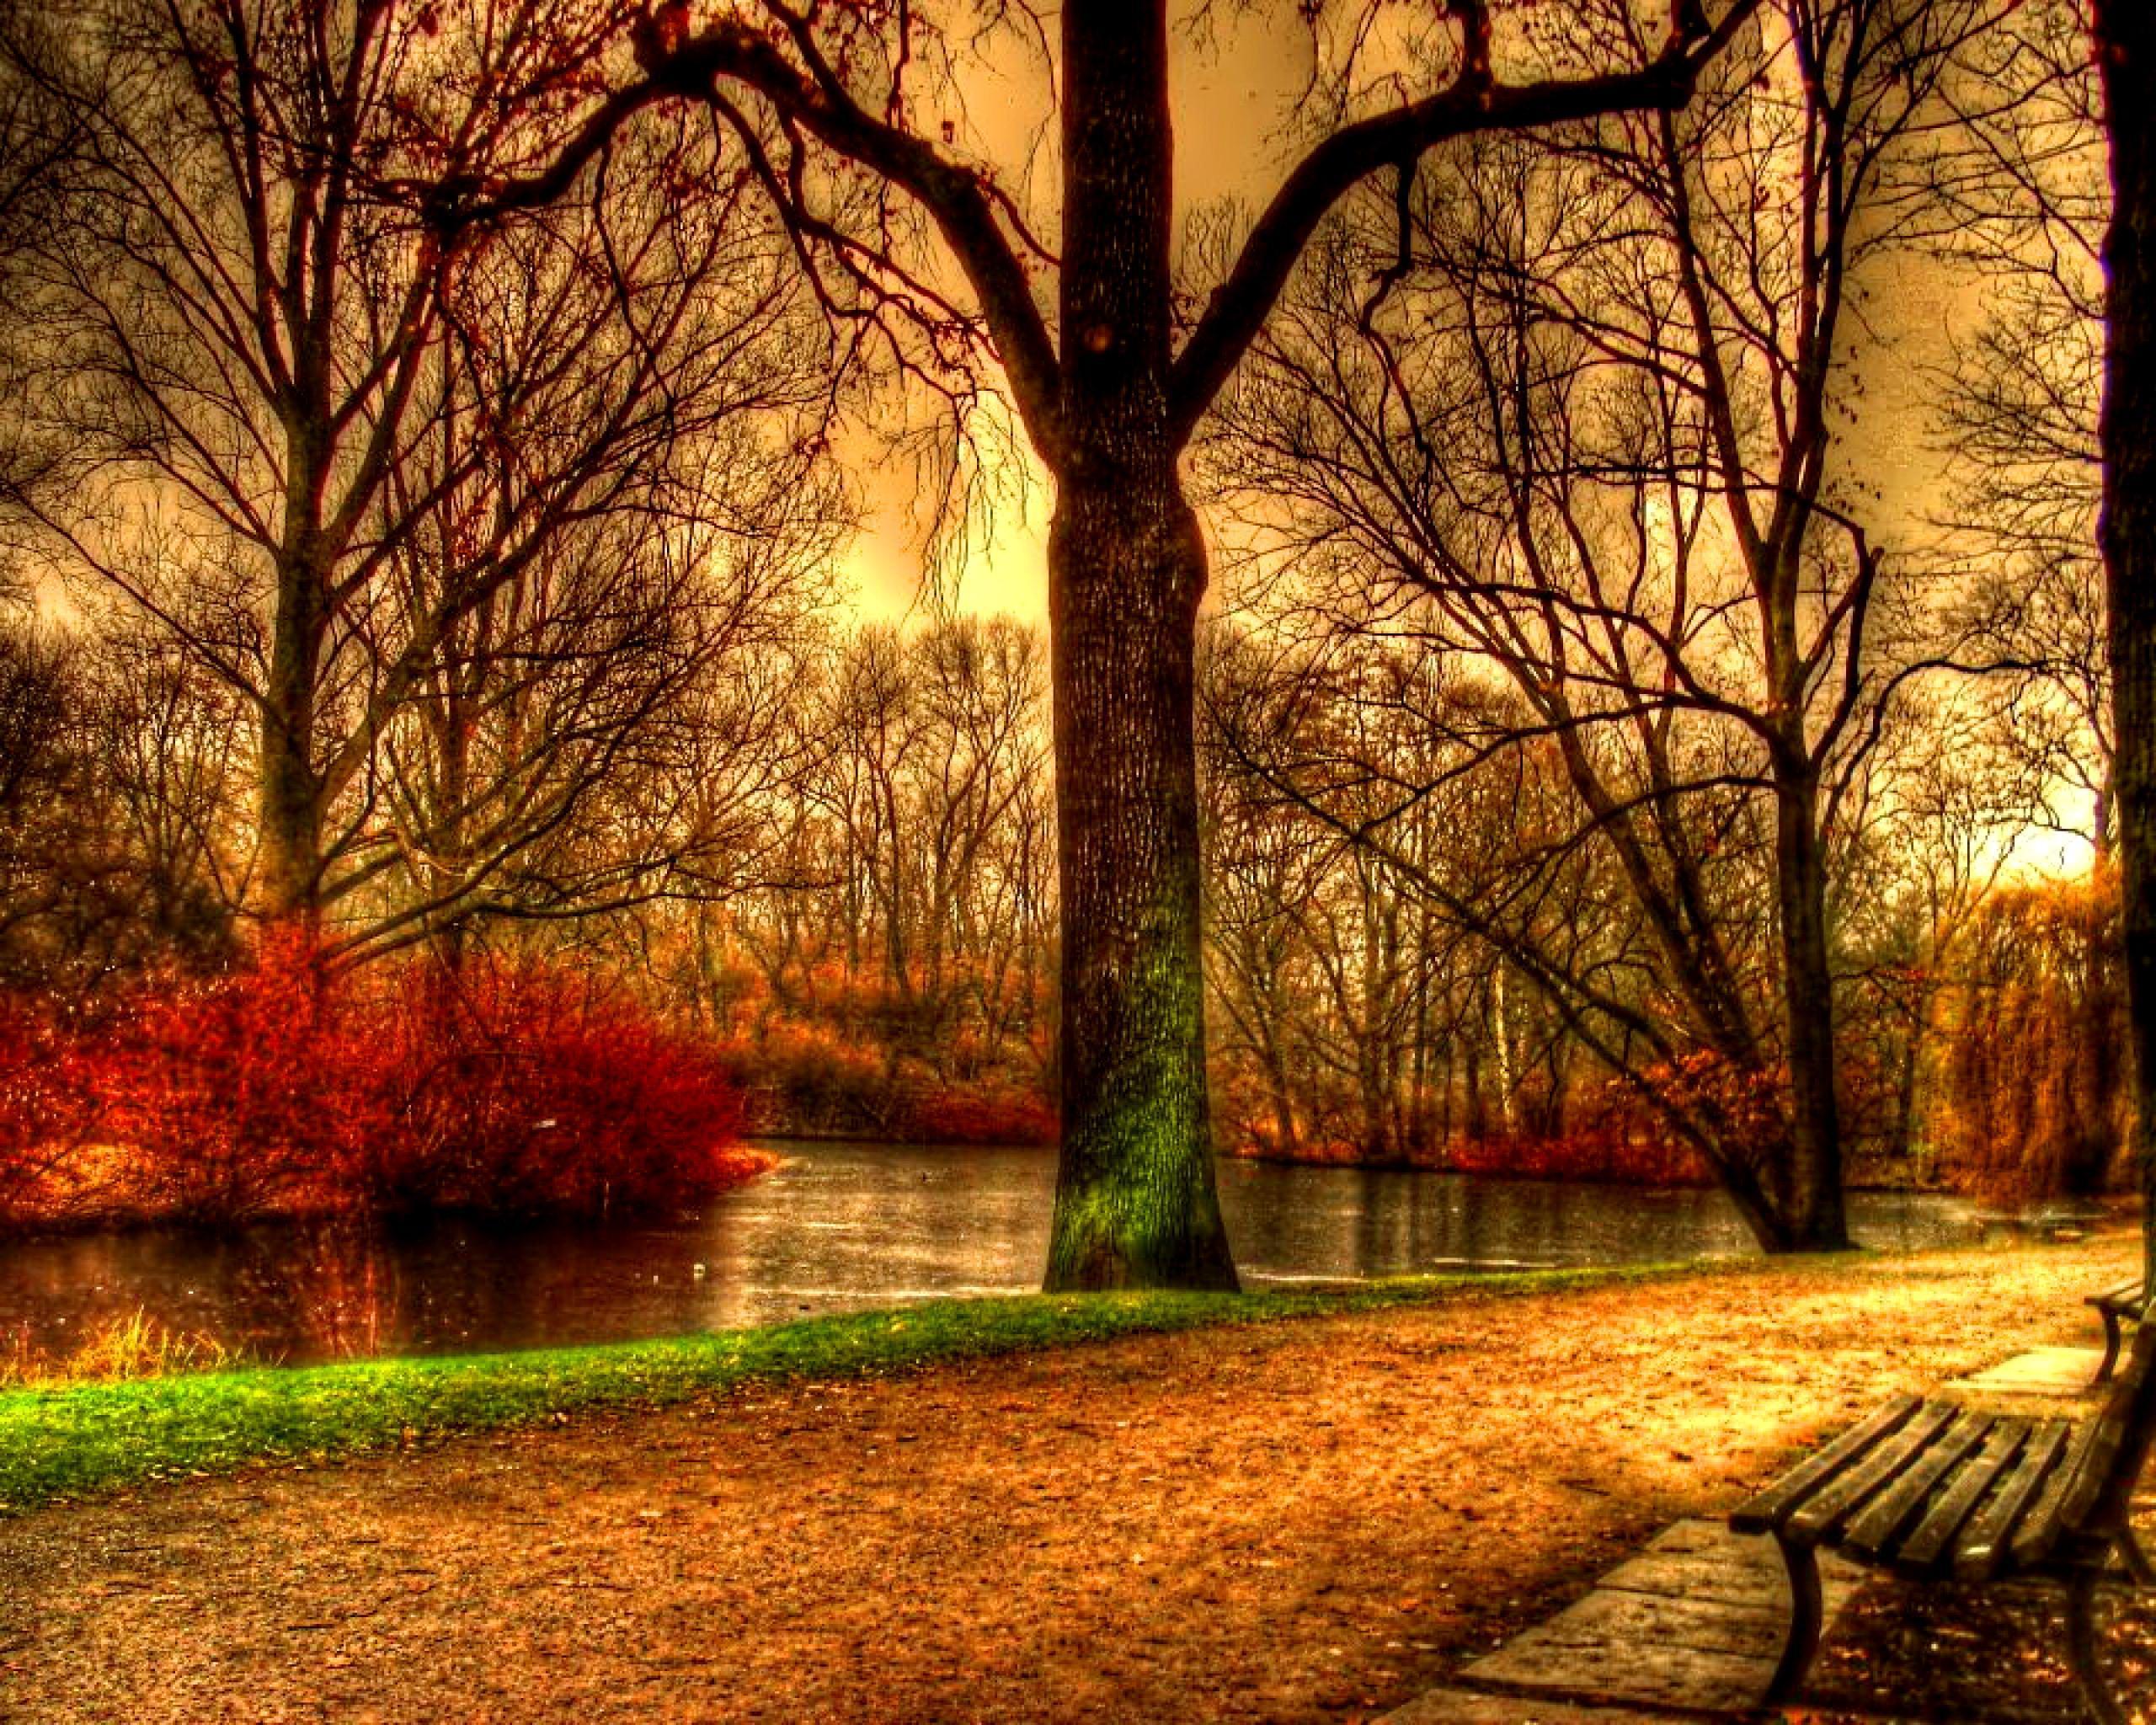 Germany Autumn HD desktop wallpaper, Widescreen, High